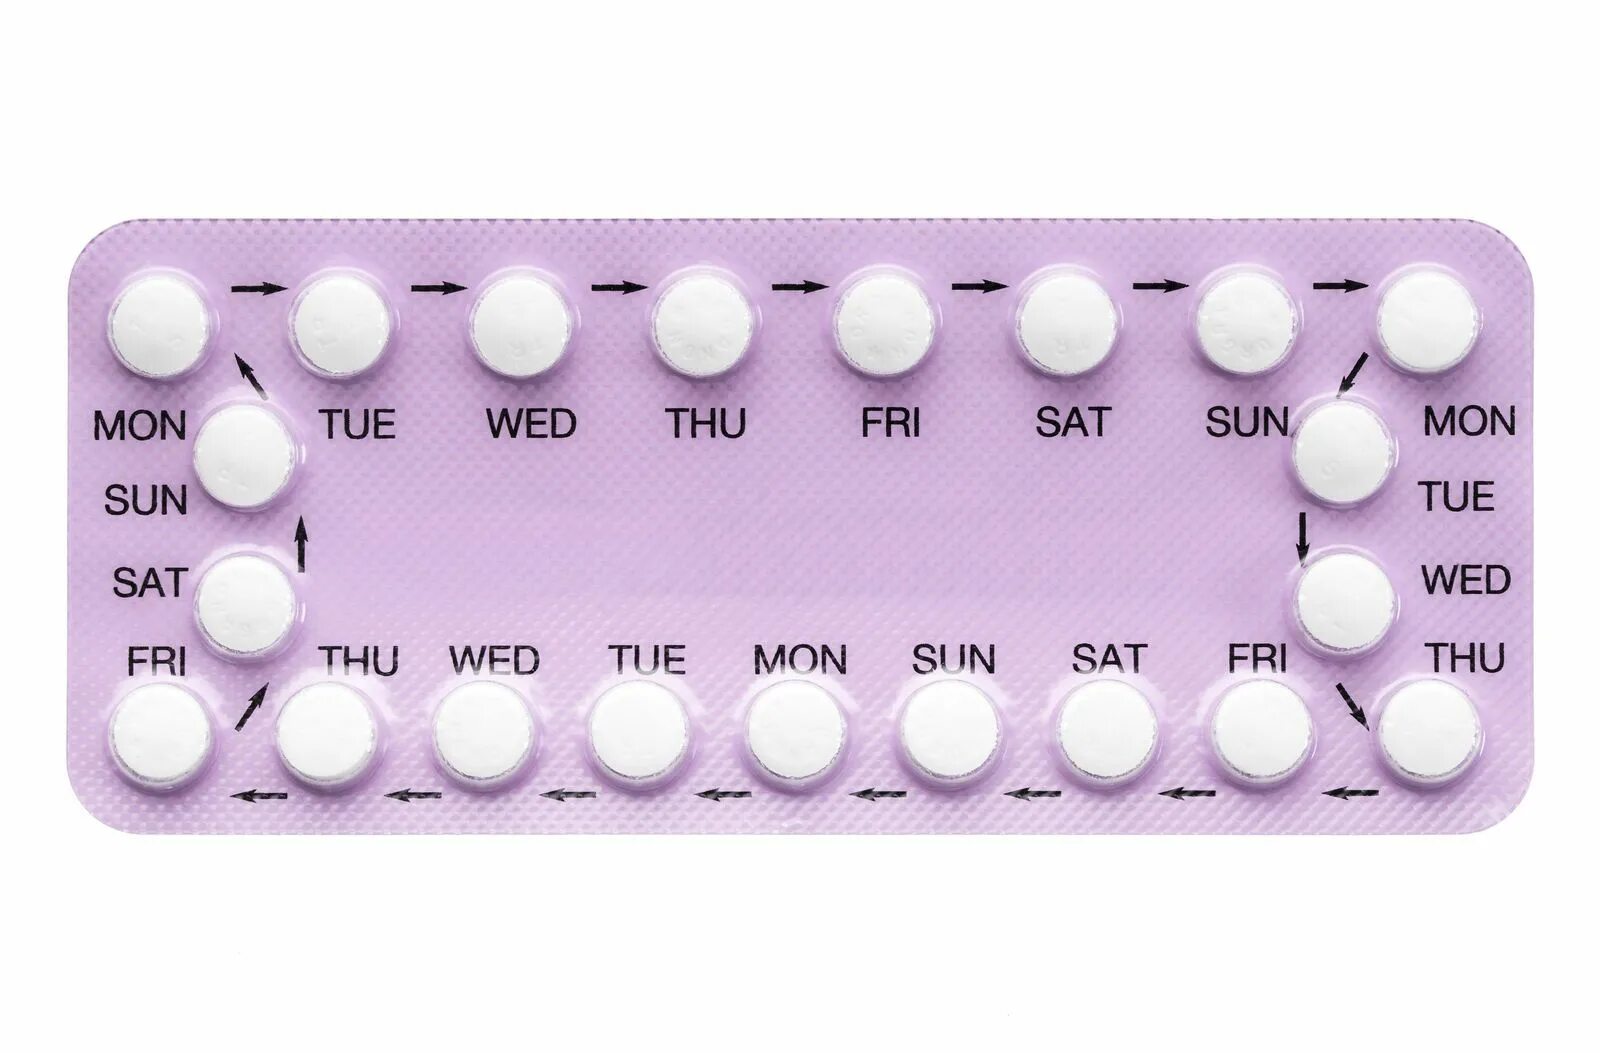 Гормональные таблетки для мужчин. Противозачаточные оральные контрацептивы. Противозачаточные таблетки для женщин. Комбинированные оральные контрацептивы. Комбинированные противозачаточные препараты.